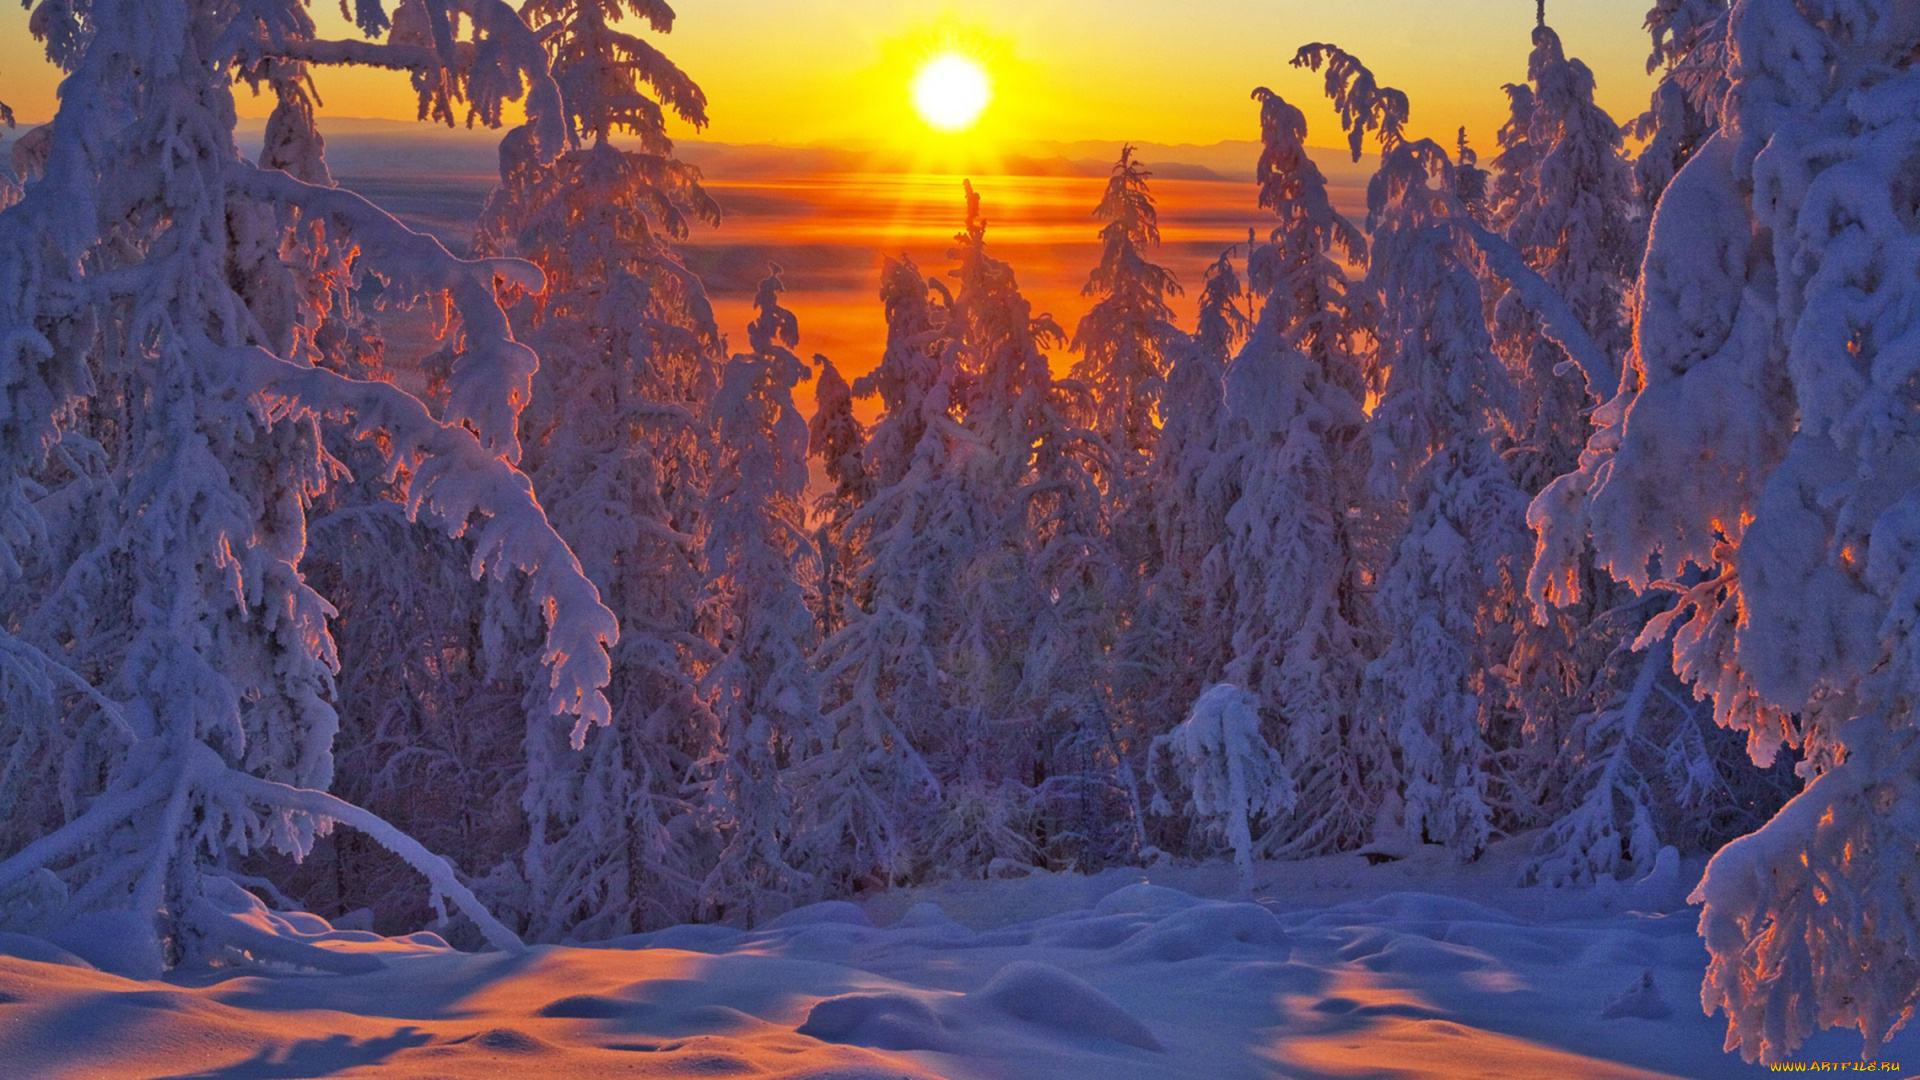 Якутия, , оймяконский, район, природа, зима, вече, холод, деревья, район, пейзаж, мороз, снег, оймяконский, закат